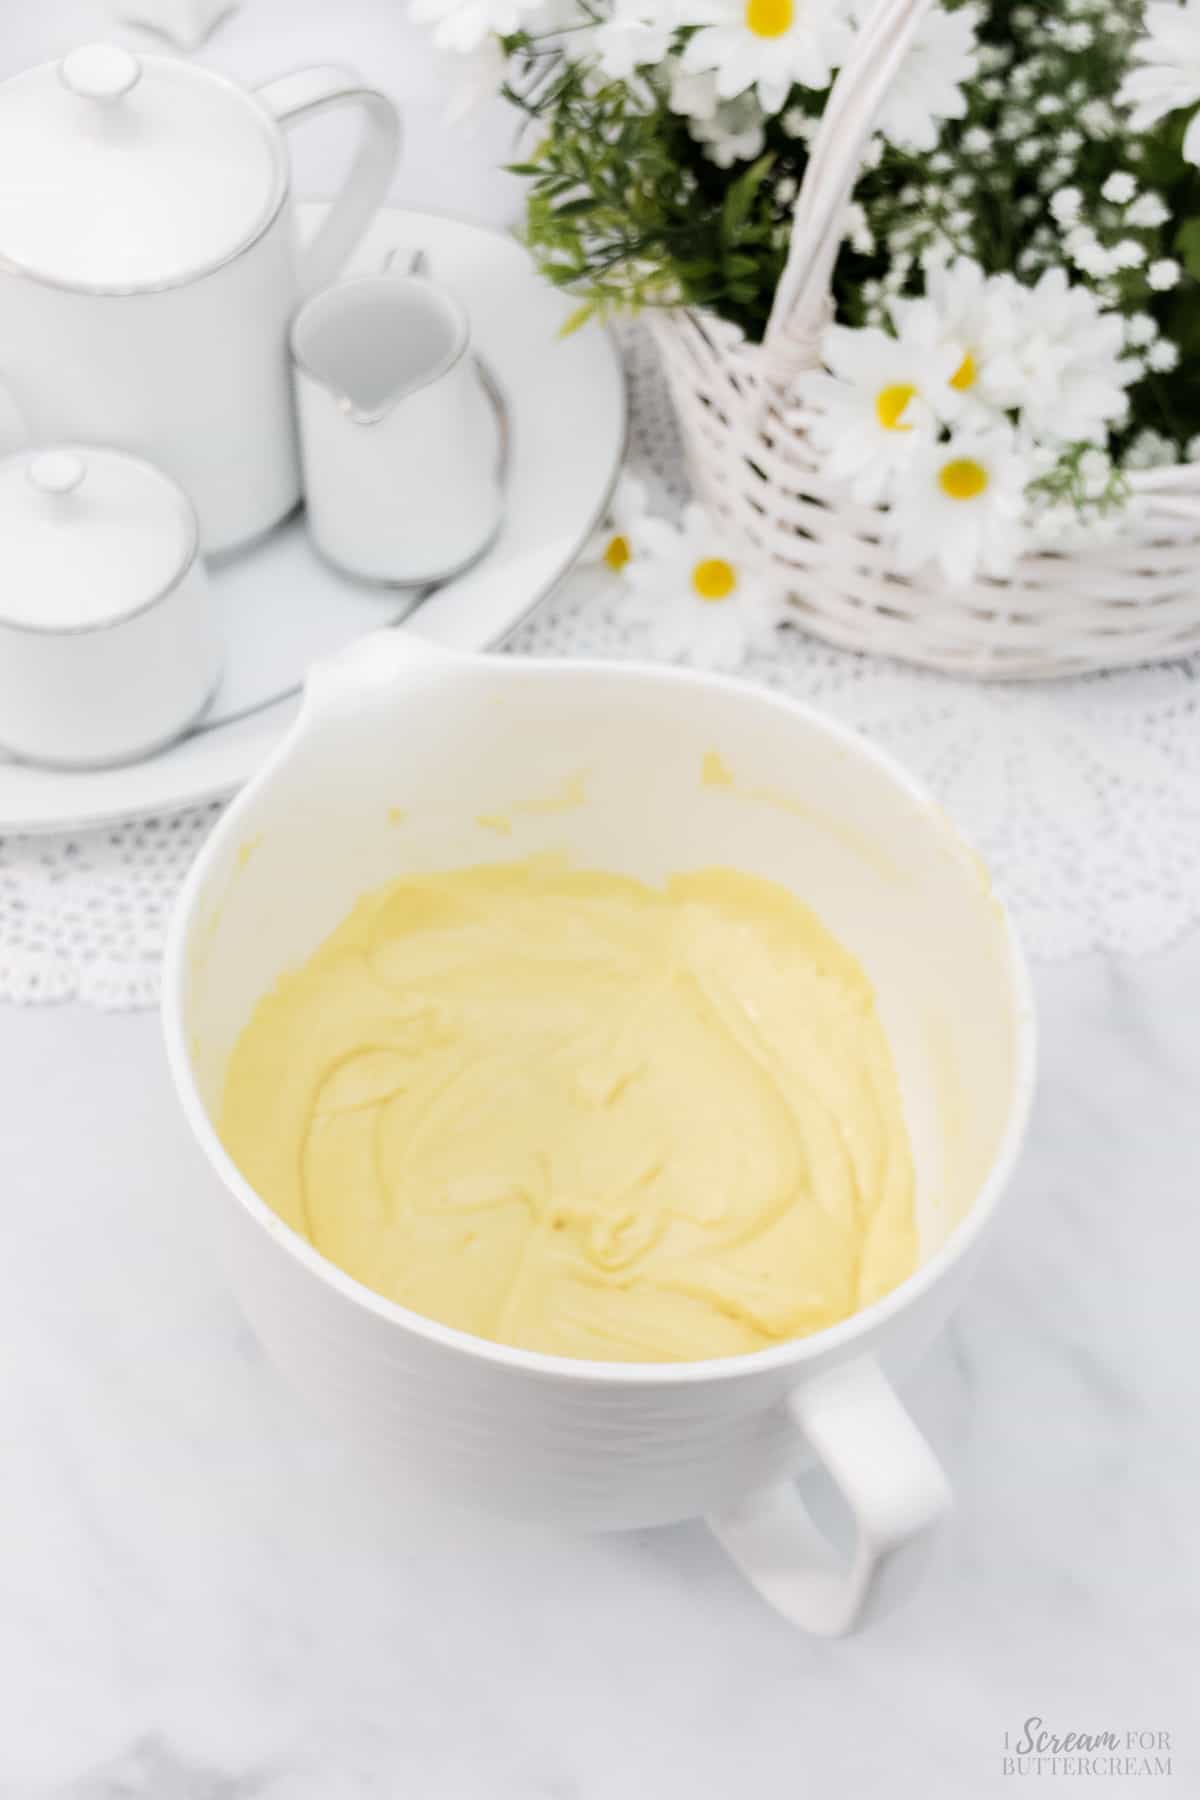 Lemon cake batter in a large white mixing bowl.